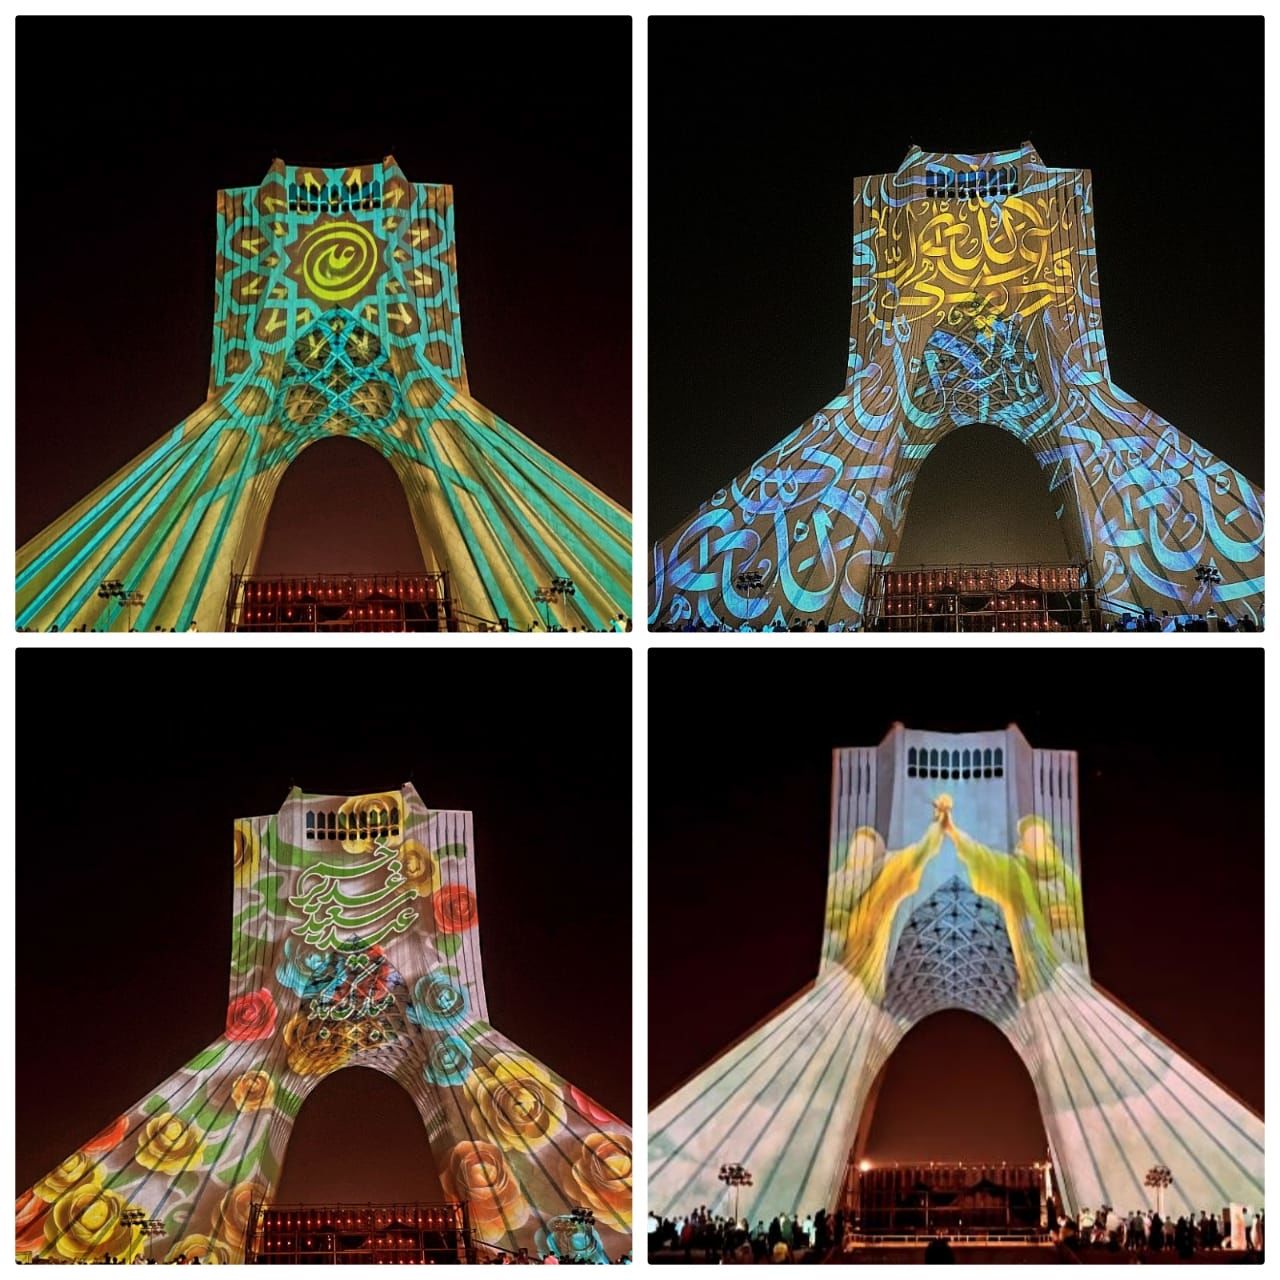 Azadi Tower was illuminated